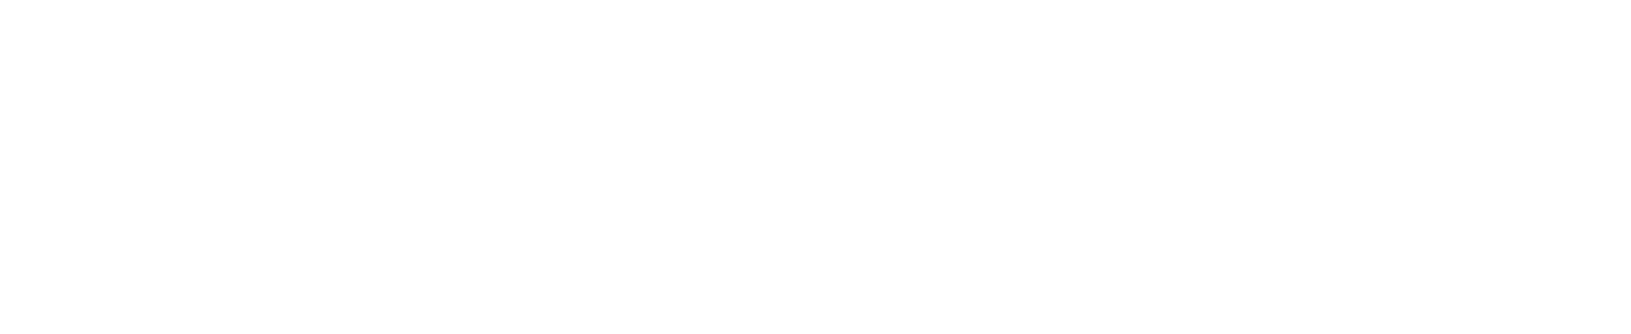 TriDelta Private Wealth horizontal logo_white